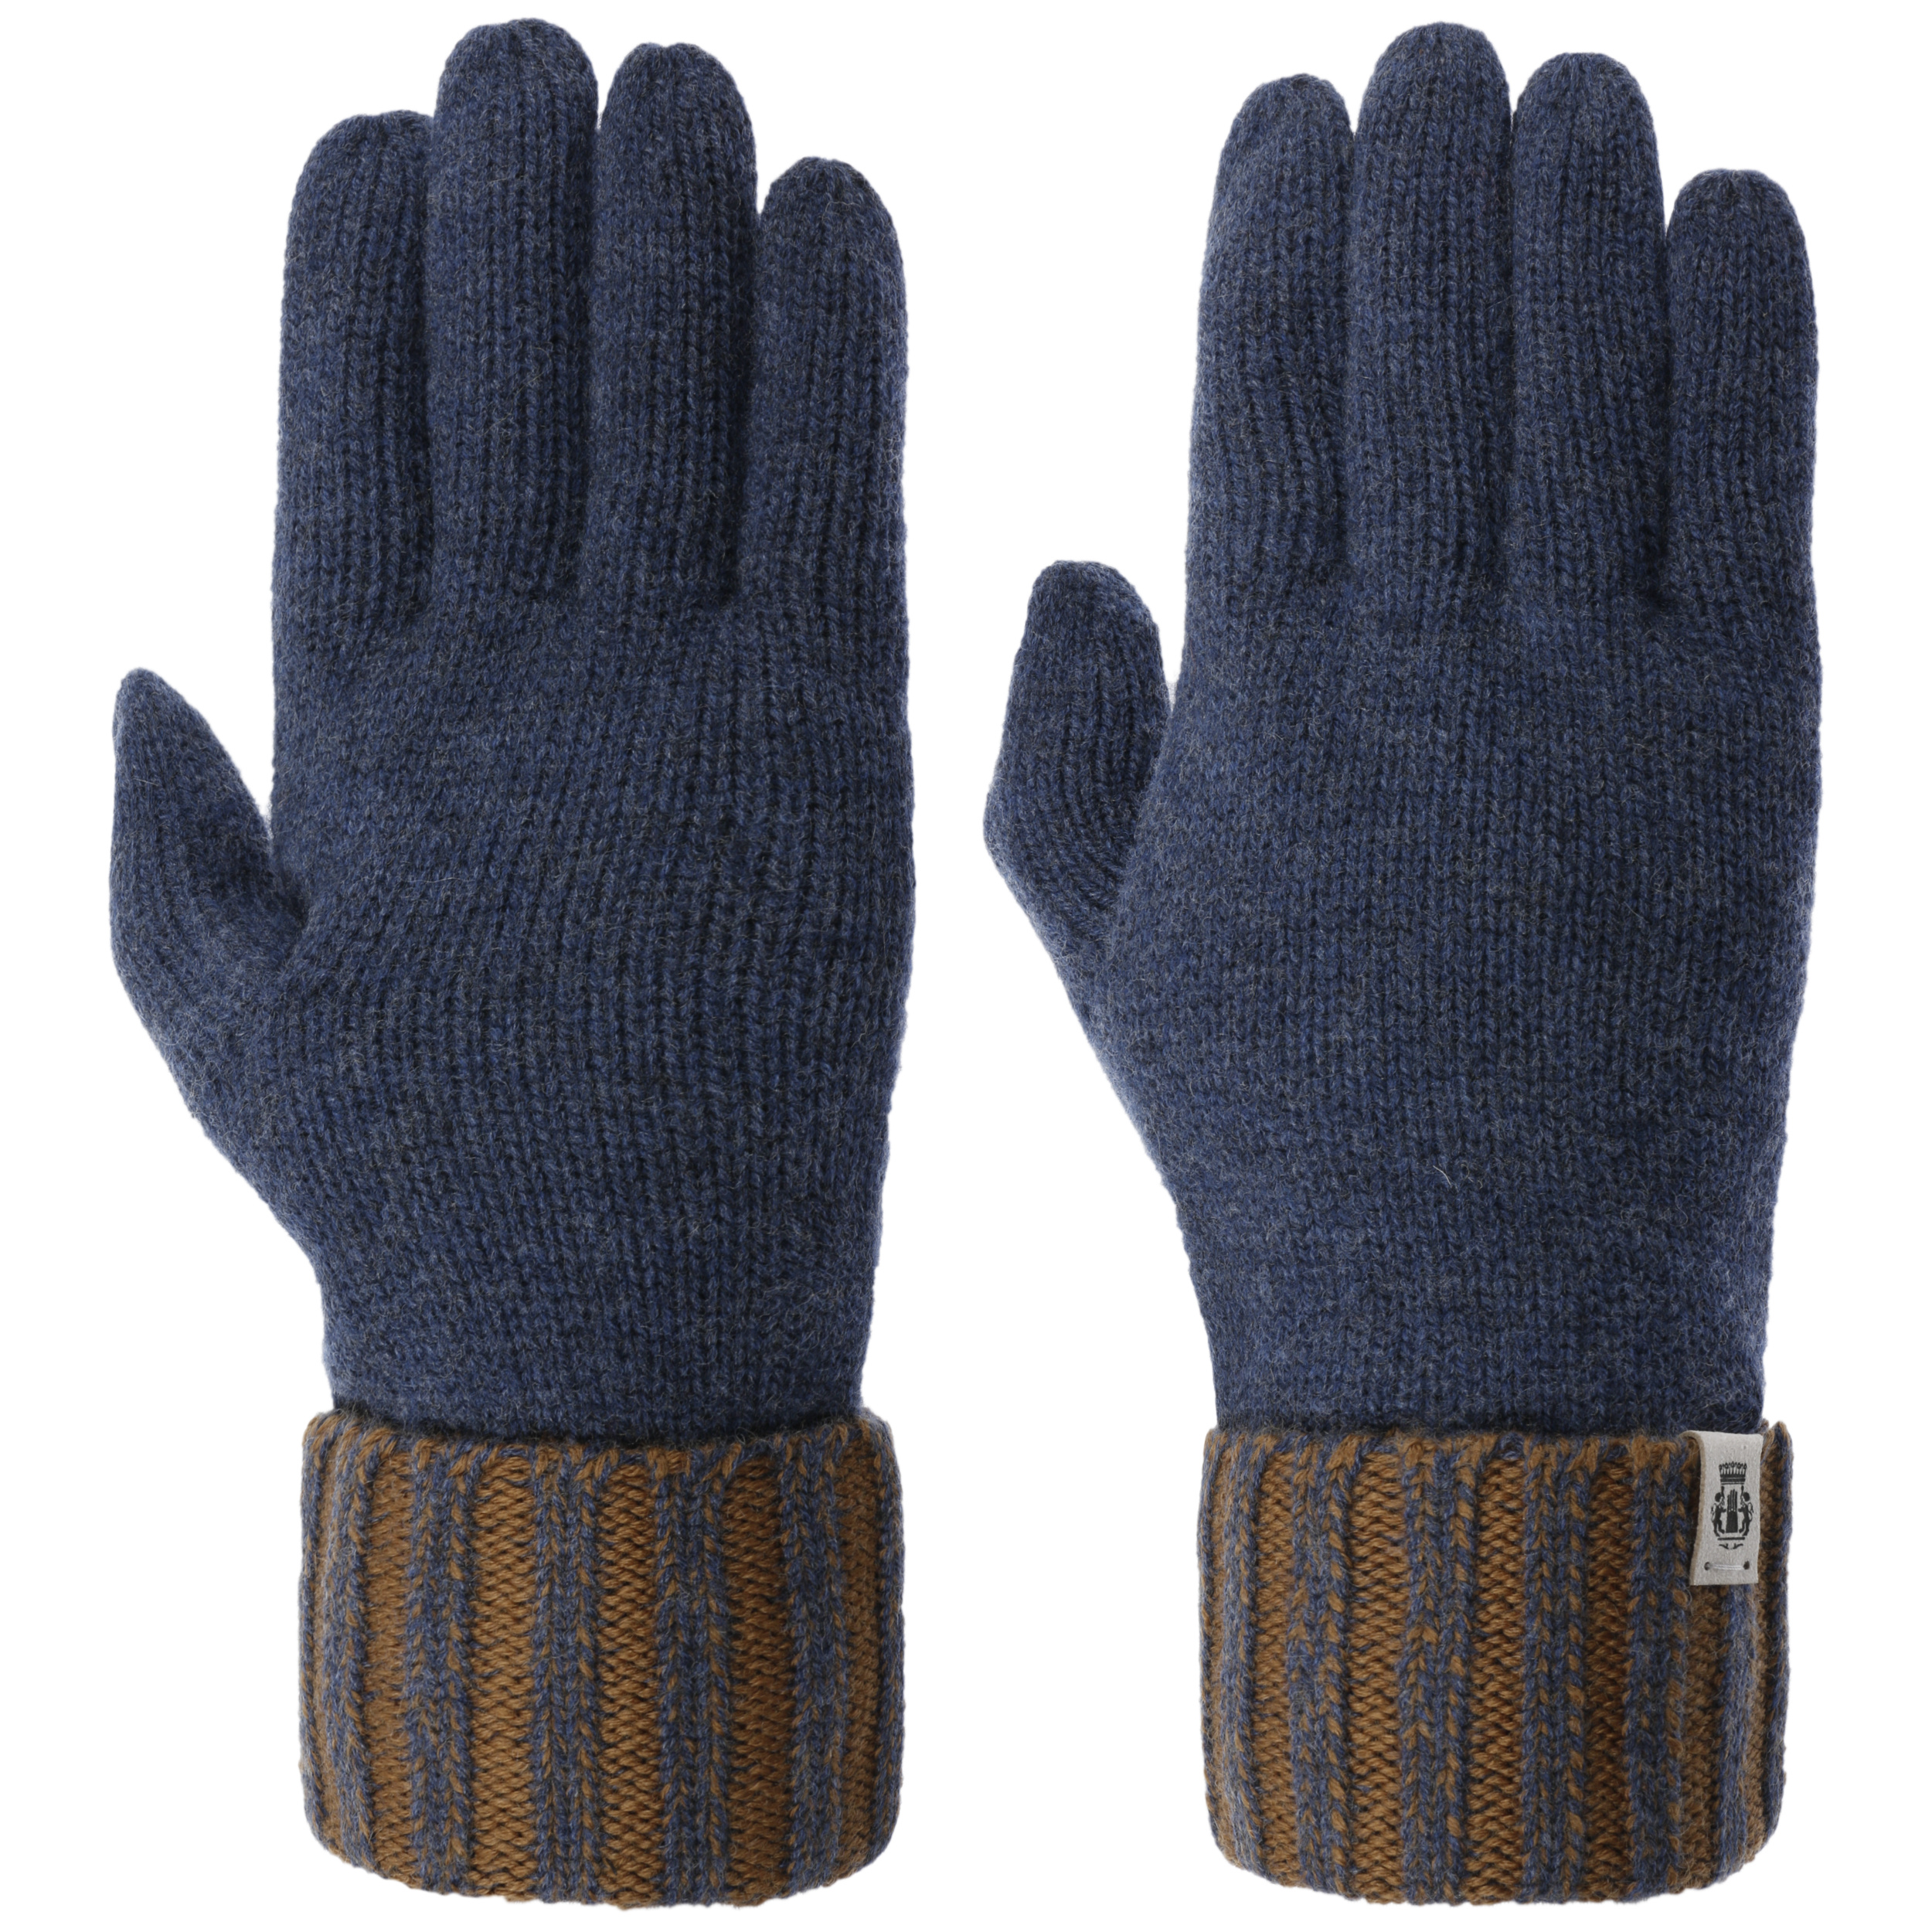 Accessoires Handschoenen & wanten Winterhandschoenen Merino Wollen Handschoenen Met Visgraat Manchet 